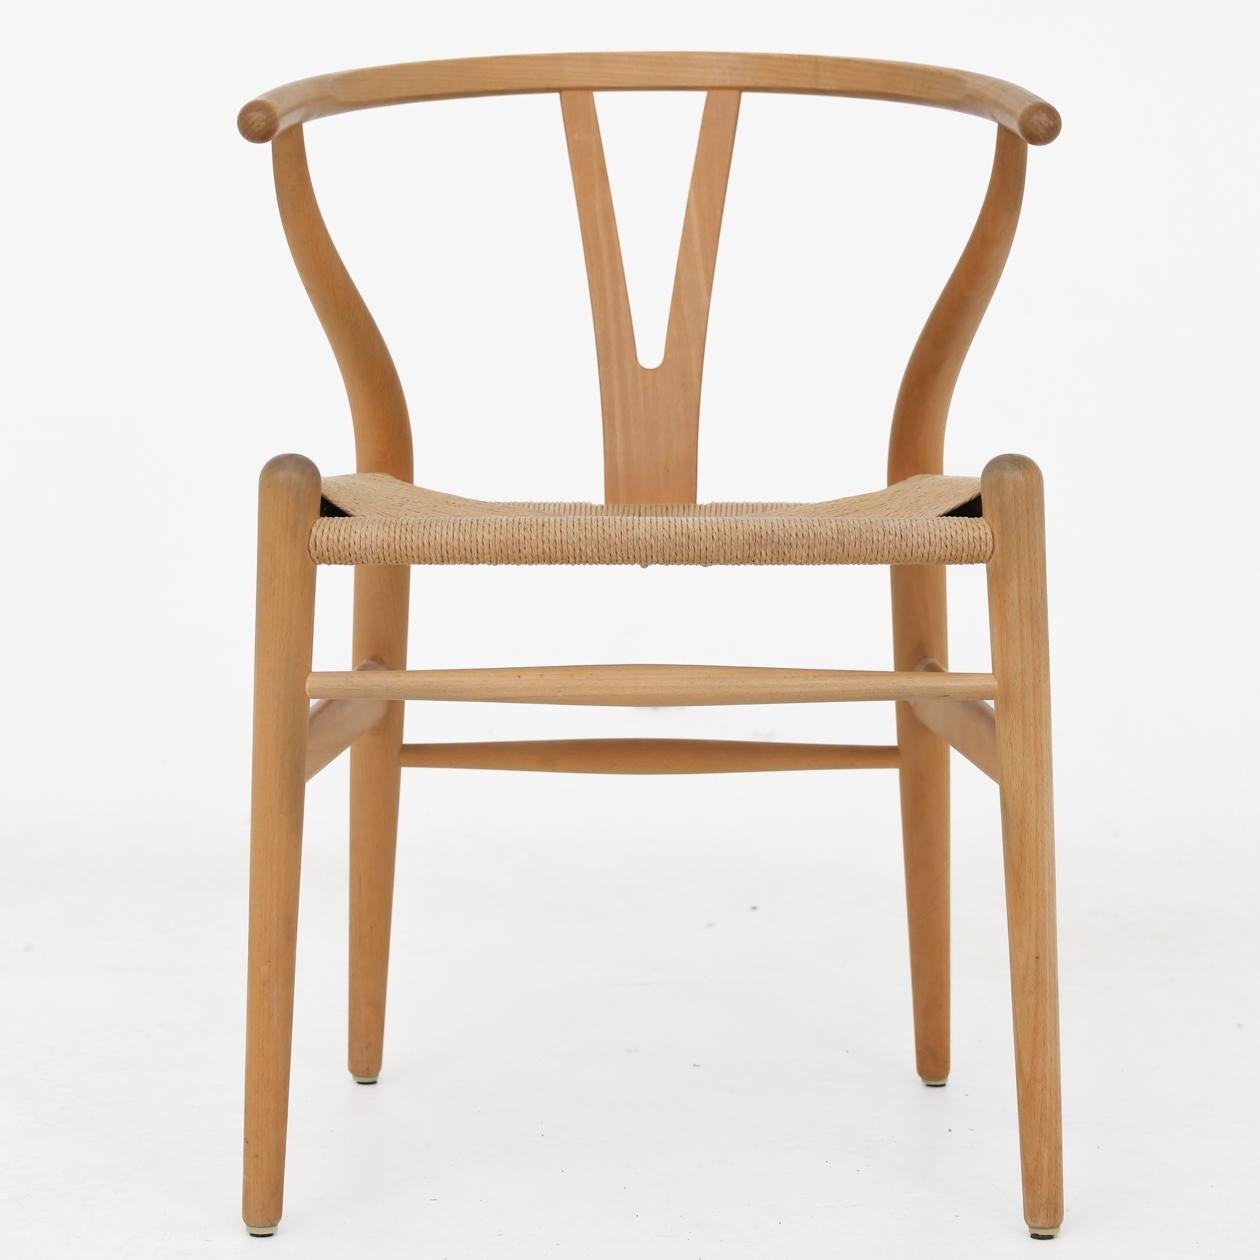 CH 24 - ensemble de 6 chaises 'Wishbone' en hêtre et fil de papier tissé. Hans J. Wegner / Carl Hansen.